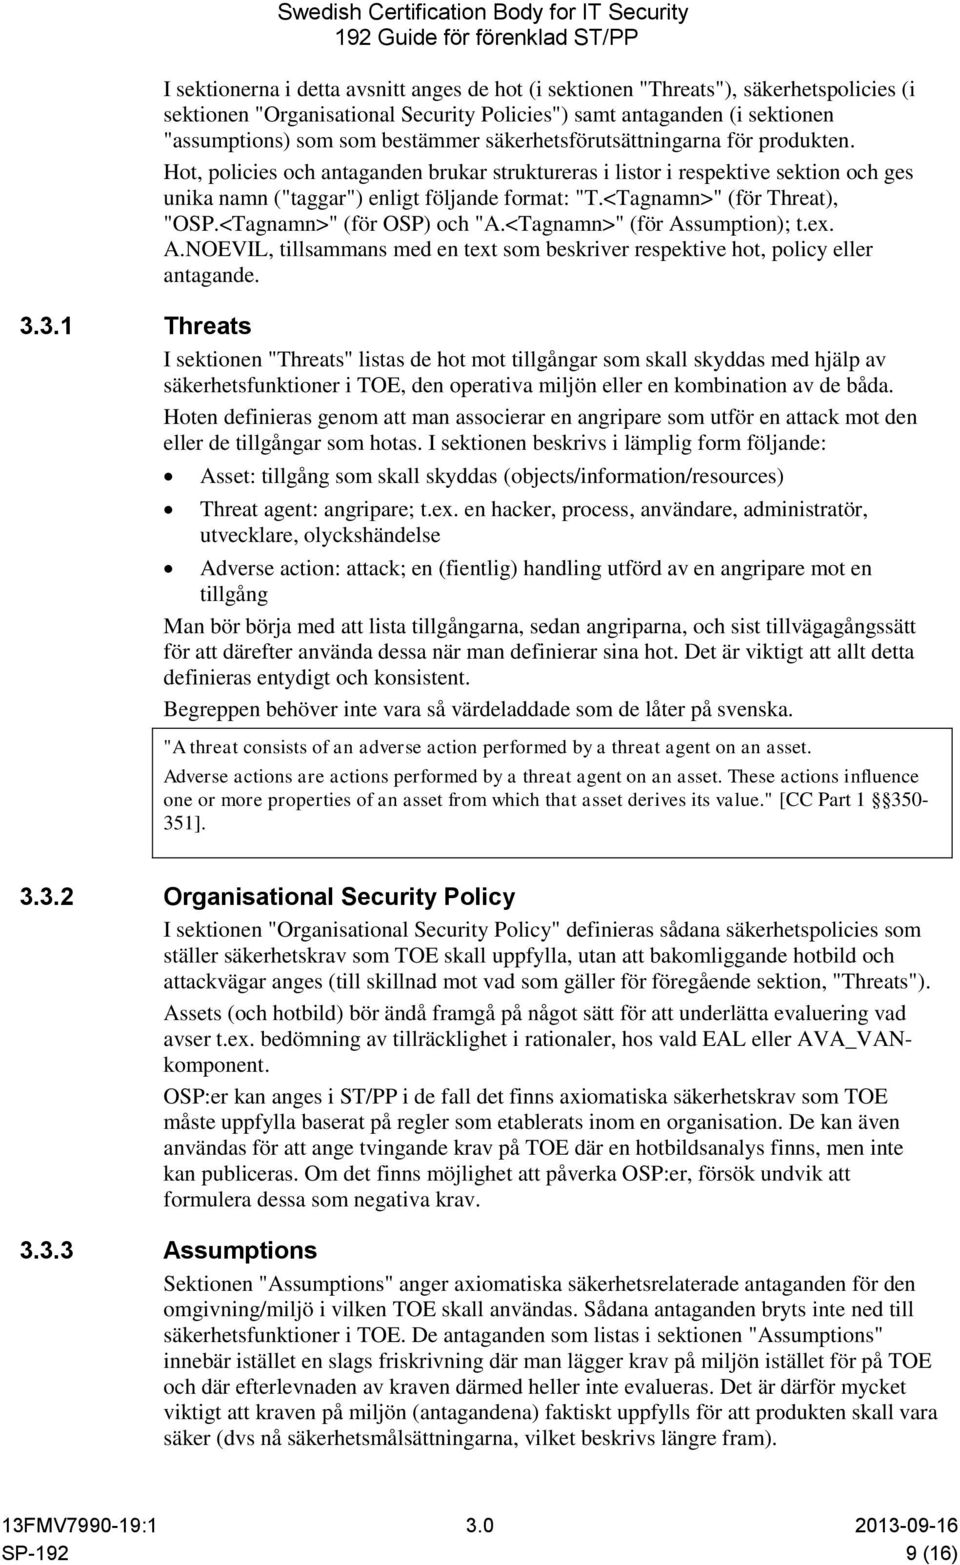 <Tagnamn>" (för Threat), "OSP.<Tagnamn>" (för OSP) och "A.<Tagnamn>" (för Assumption); t.ex. A.NOEVIL, tillsammans med en text som beskriver respektive hot, policy eller antagande. 3.